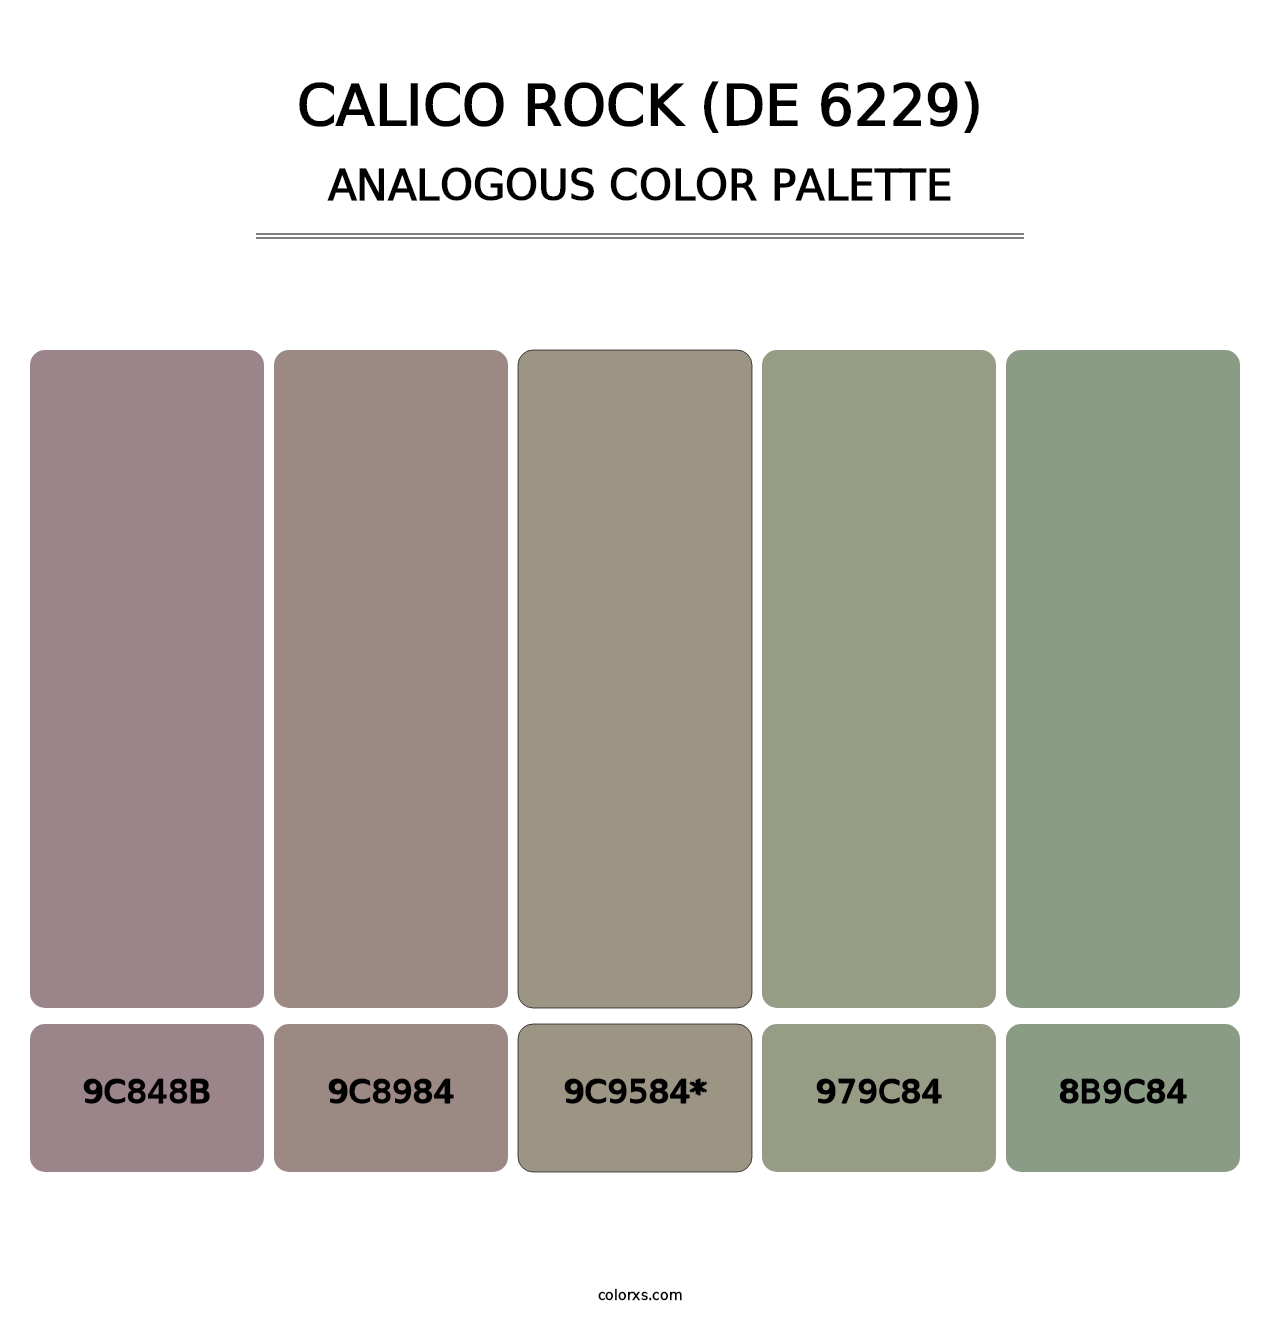 Calico Rock (DE 6229) - Analogous Color Palette